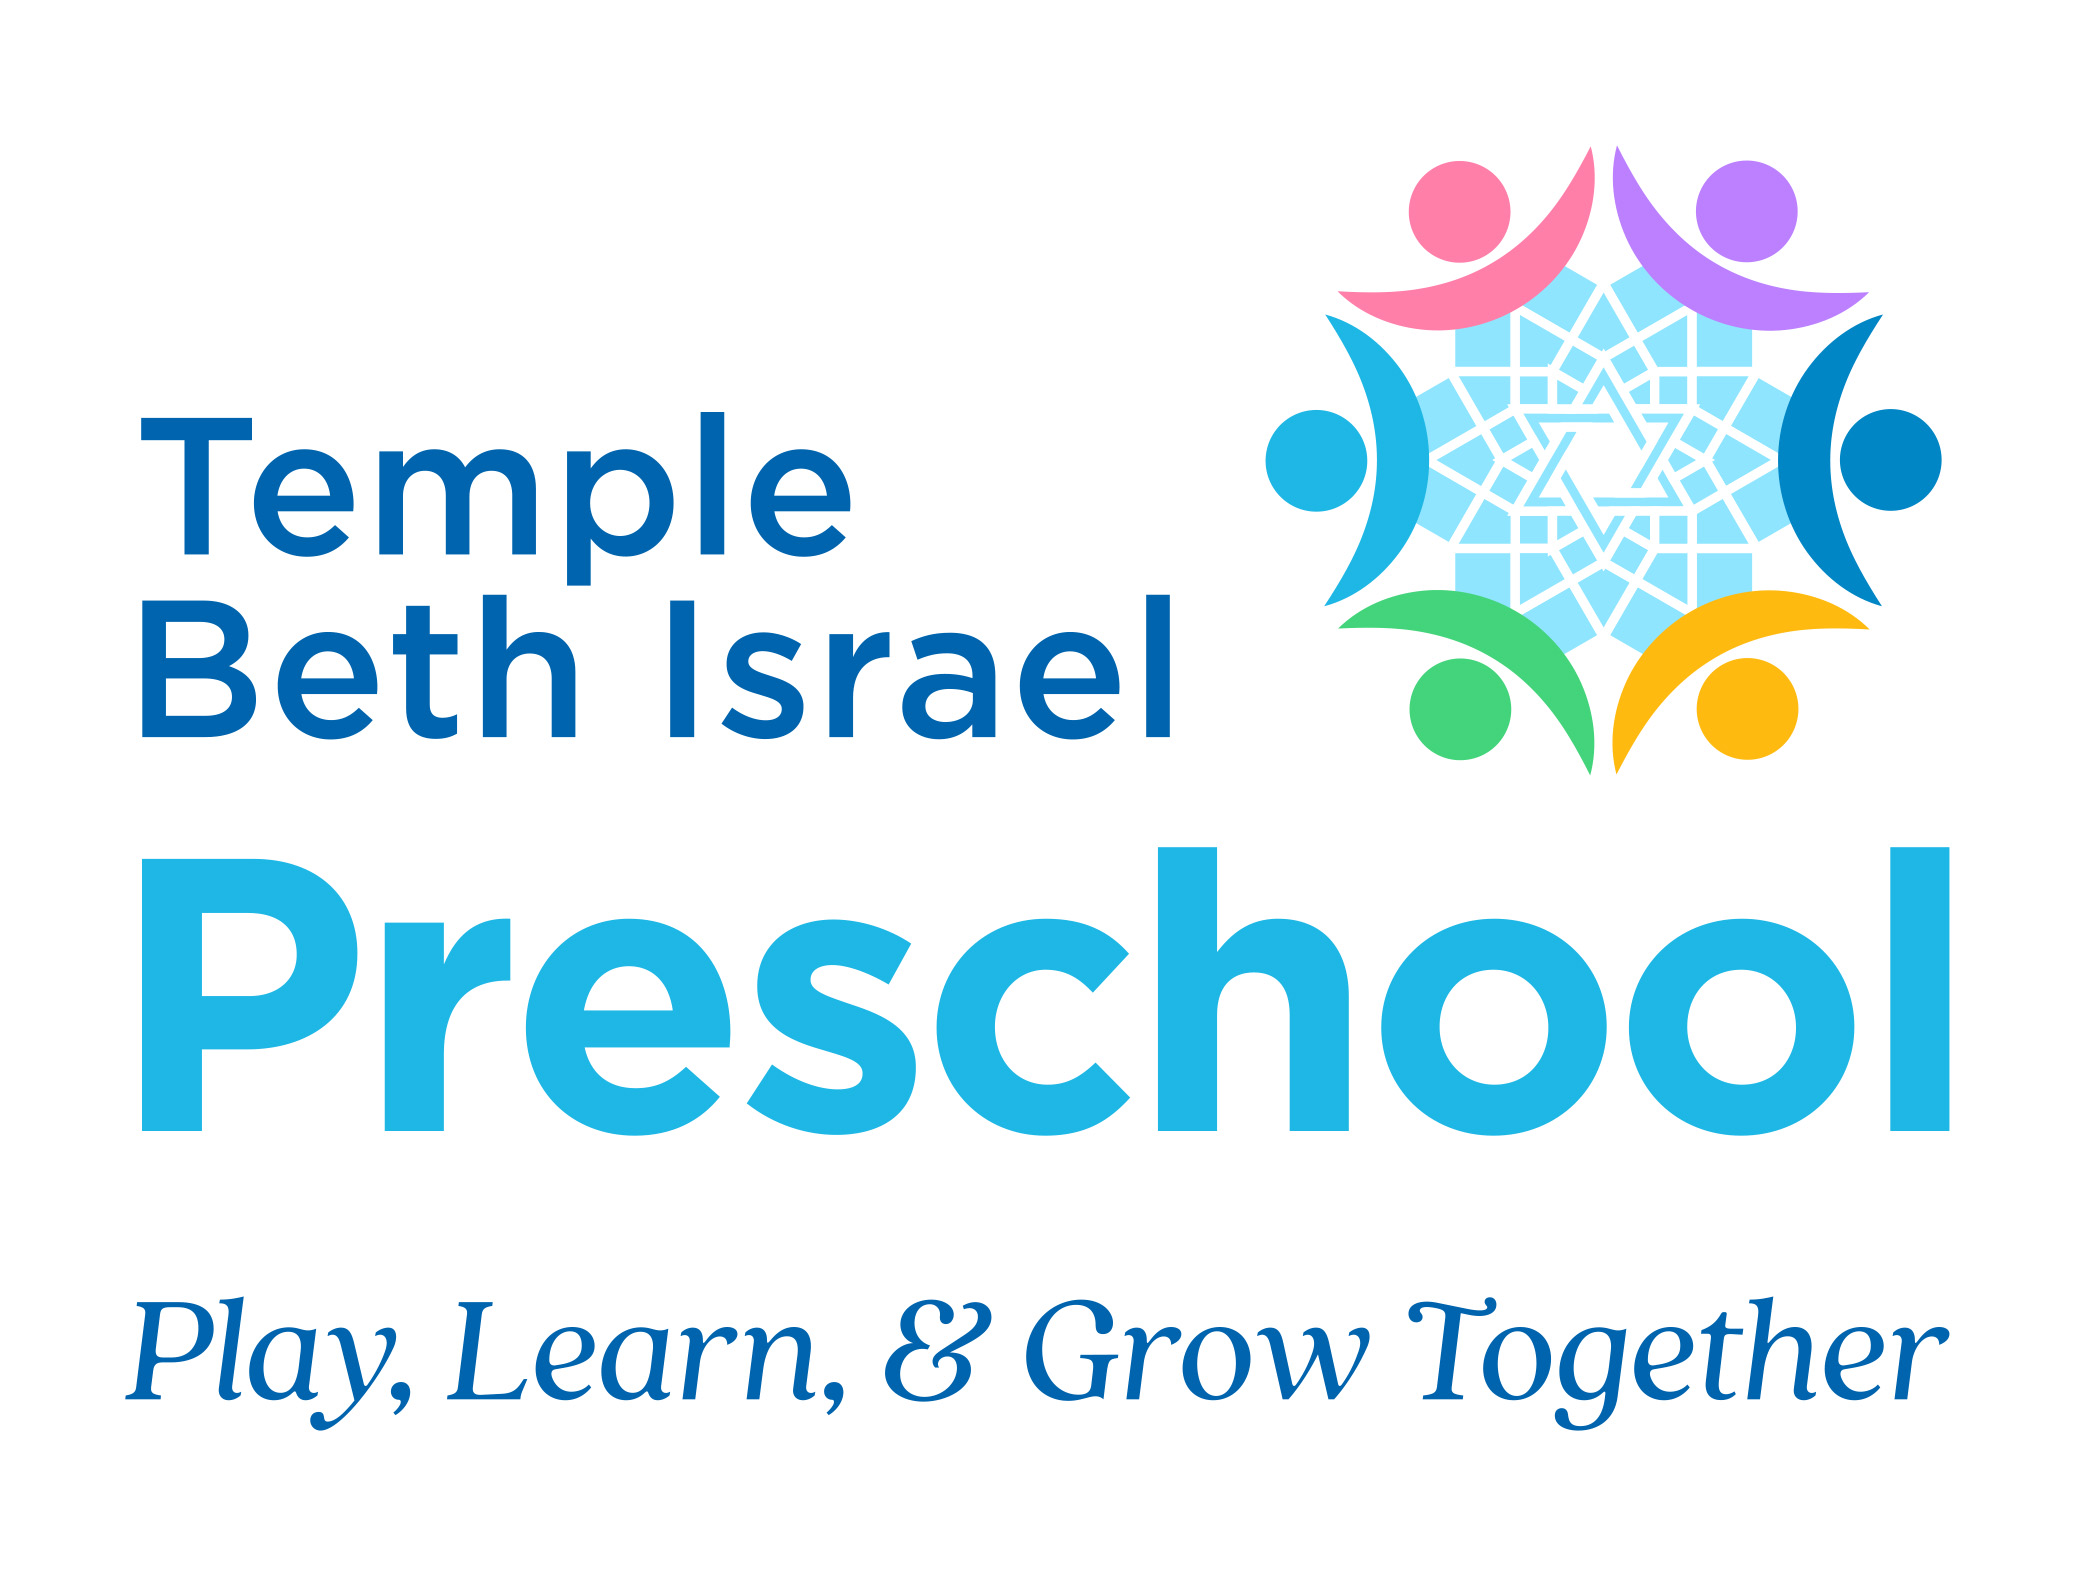 A logo for temple beth israel preschool.